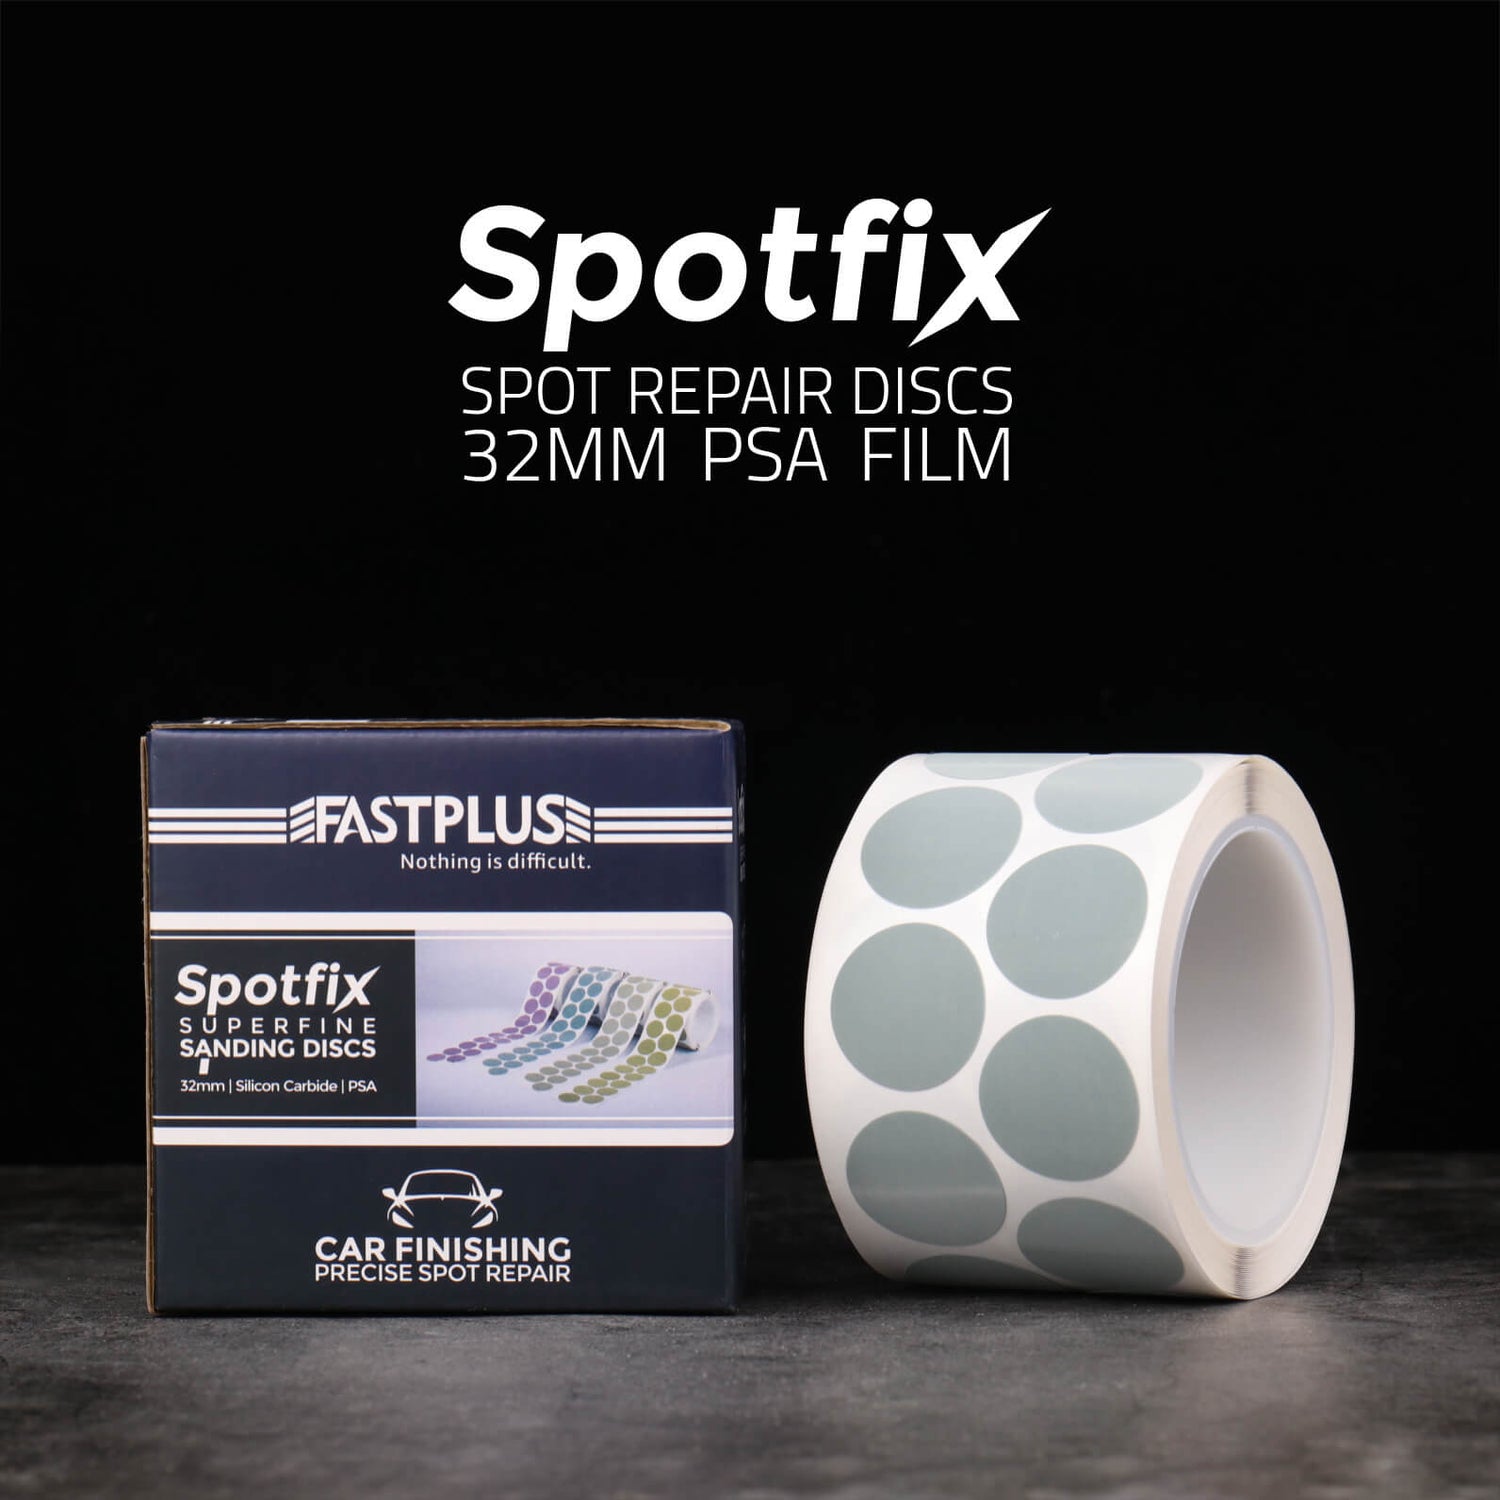 SPOTFIX Spot Repair Film Gänseblümchenscheiben 32mm PSA von fastplus - SPOTFIX spot repair film daisy discs 32mm PSA by fastplus P2000 P3000 P5000 Spotfix Minidisques abrasifs 